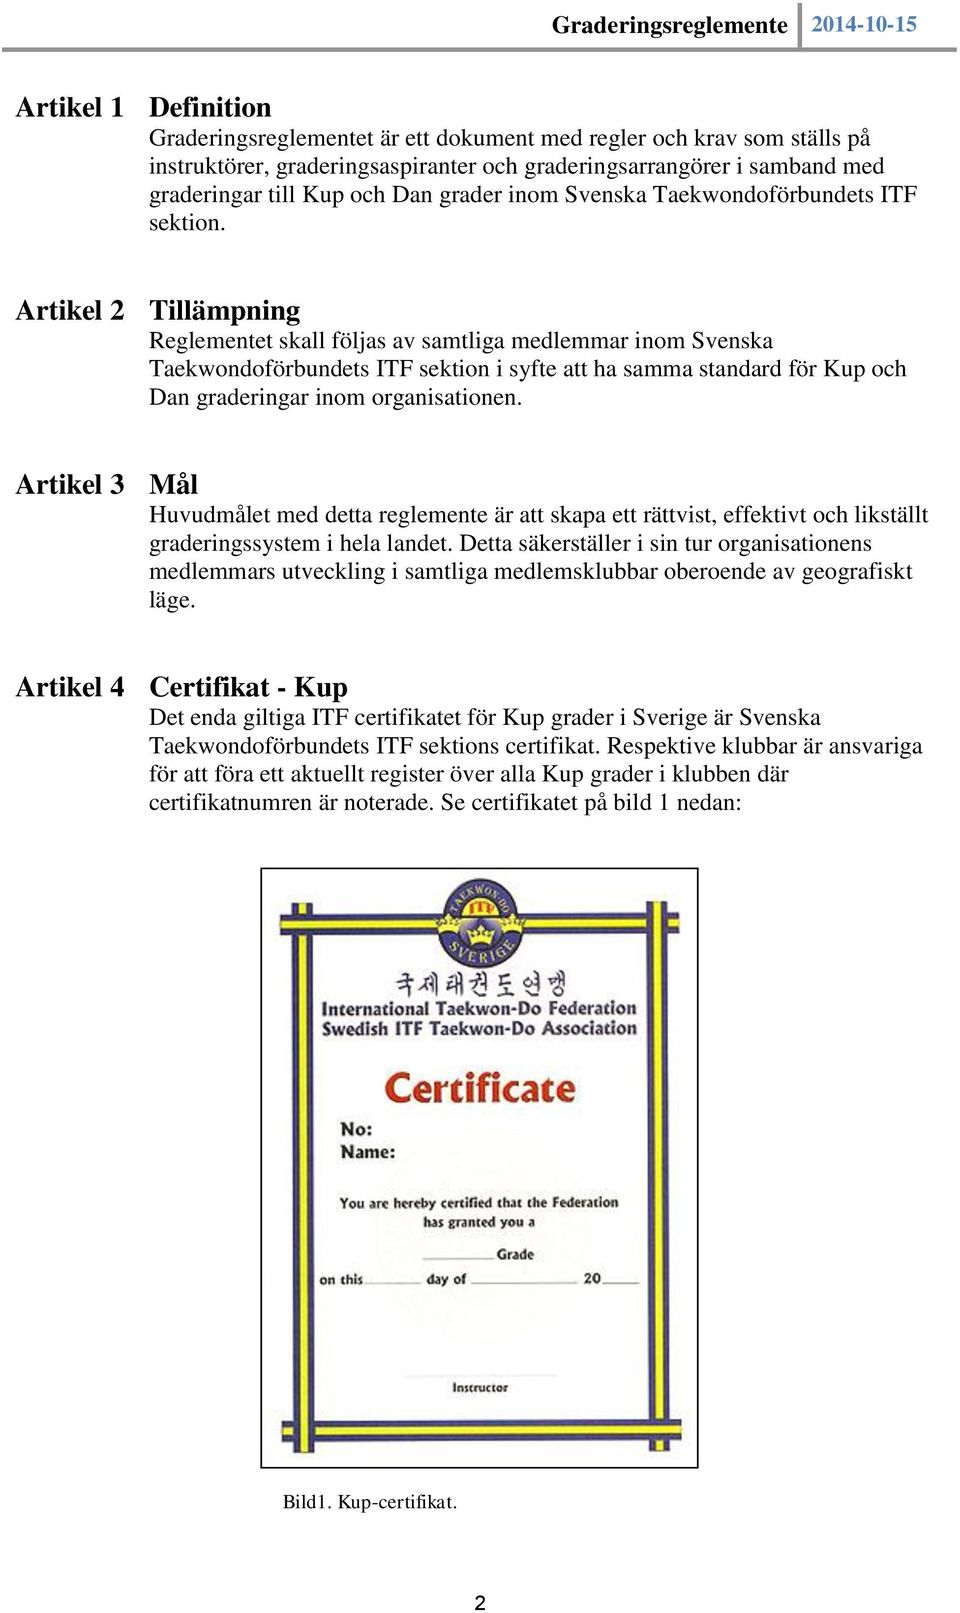 Artikel 2 Tillämpning Reglementet skall följas av samtliga medlemmar inom Svenska Taekwondoförbundets ITF sektion i syfte att ha samma standard för Kup och Dan graderingar inom organisationen.